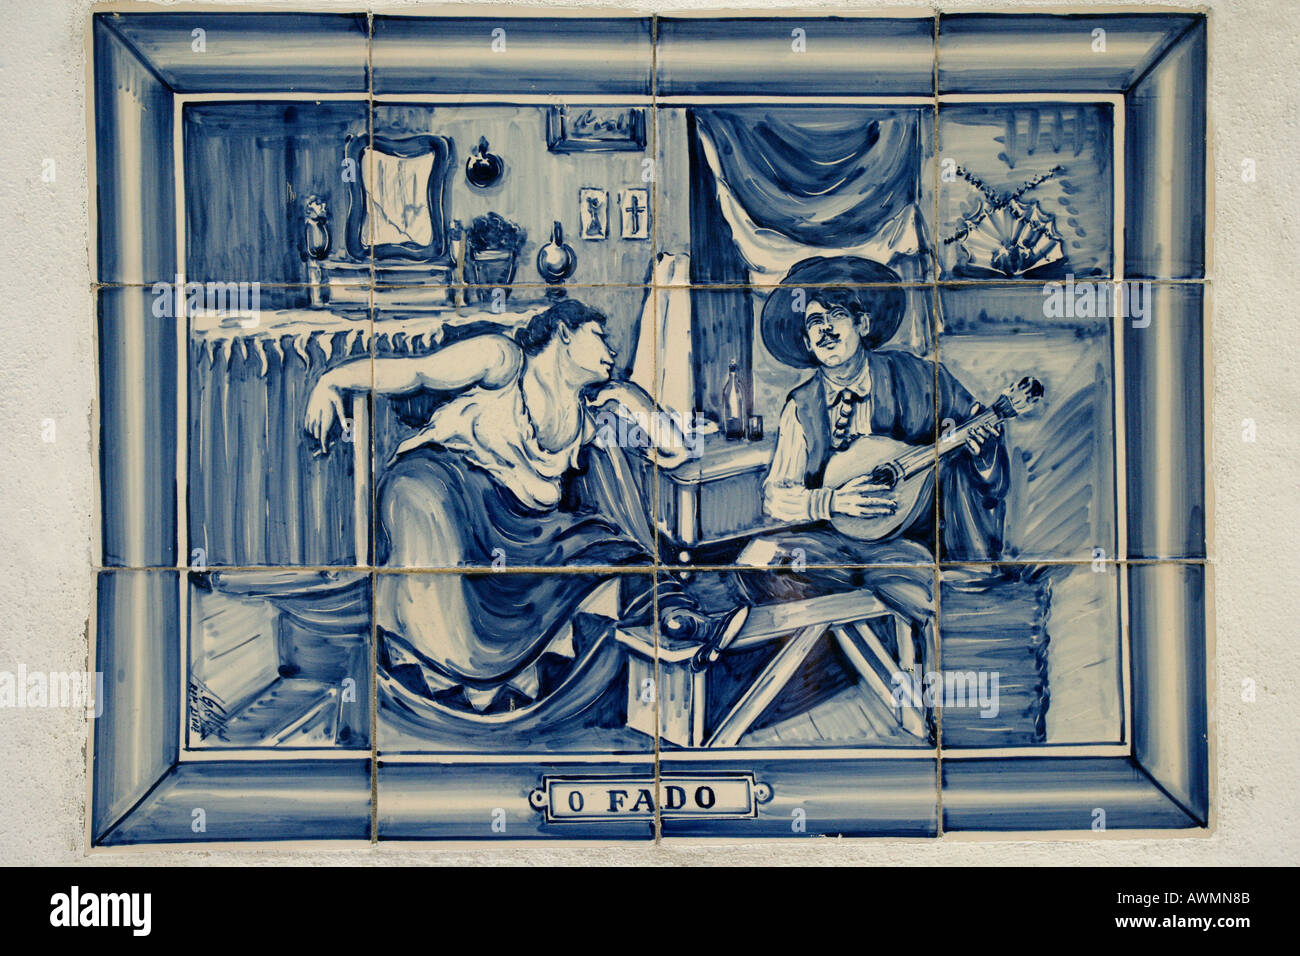 Portugiesische Fliesen Gemälde oder Azulejo Darstellung einen Mann für eine Frau ein Fado Lied spielen Stockfoto